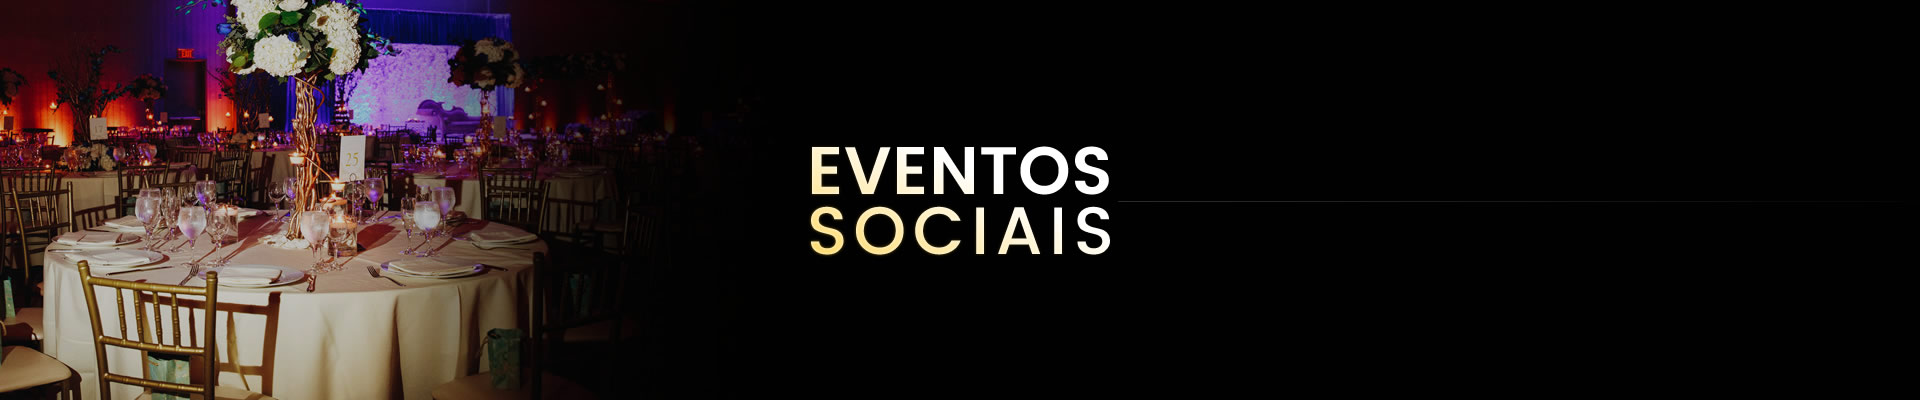 Eventos sociais